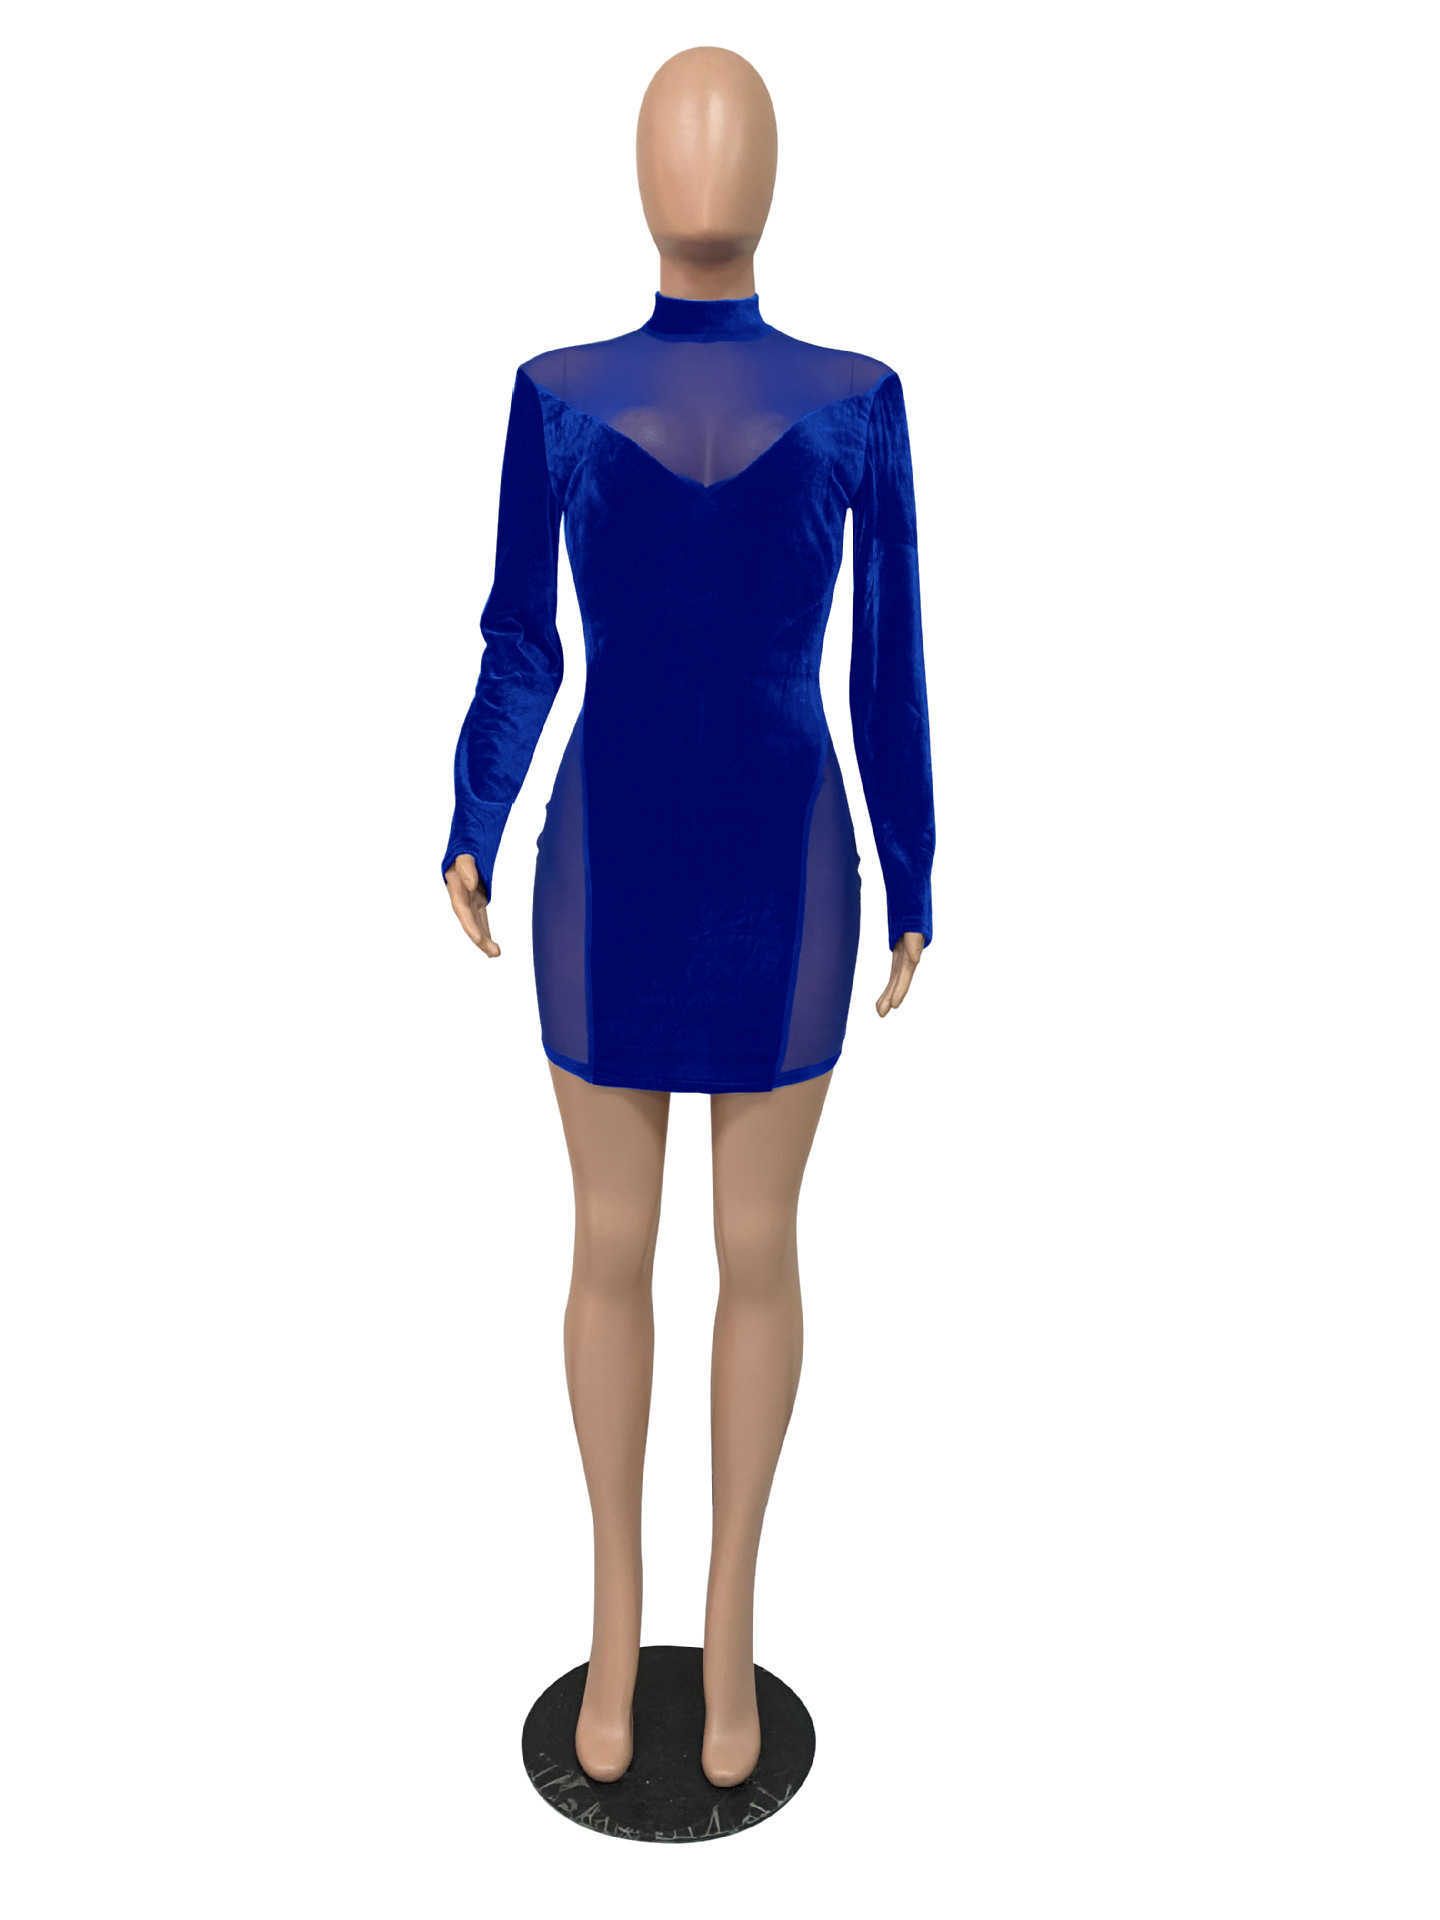 Casual Dresses ANJAMANOR Sexy Mesh Velour Bodycon Kleider für Frauen Party Club Tragen Langarm Mini Kleid Winter 2020 D36-BI24 T230210